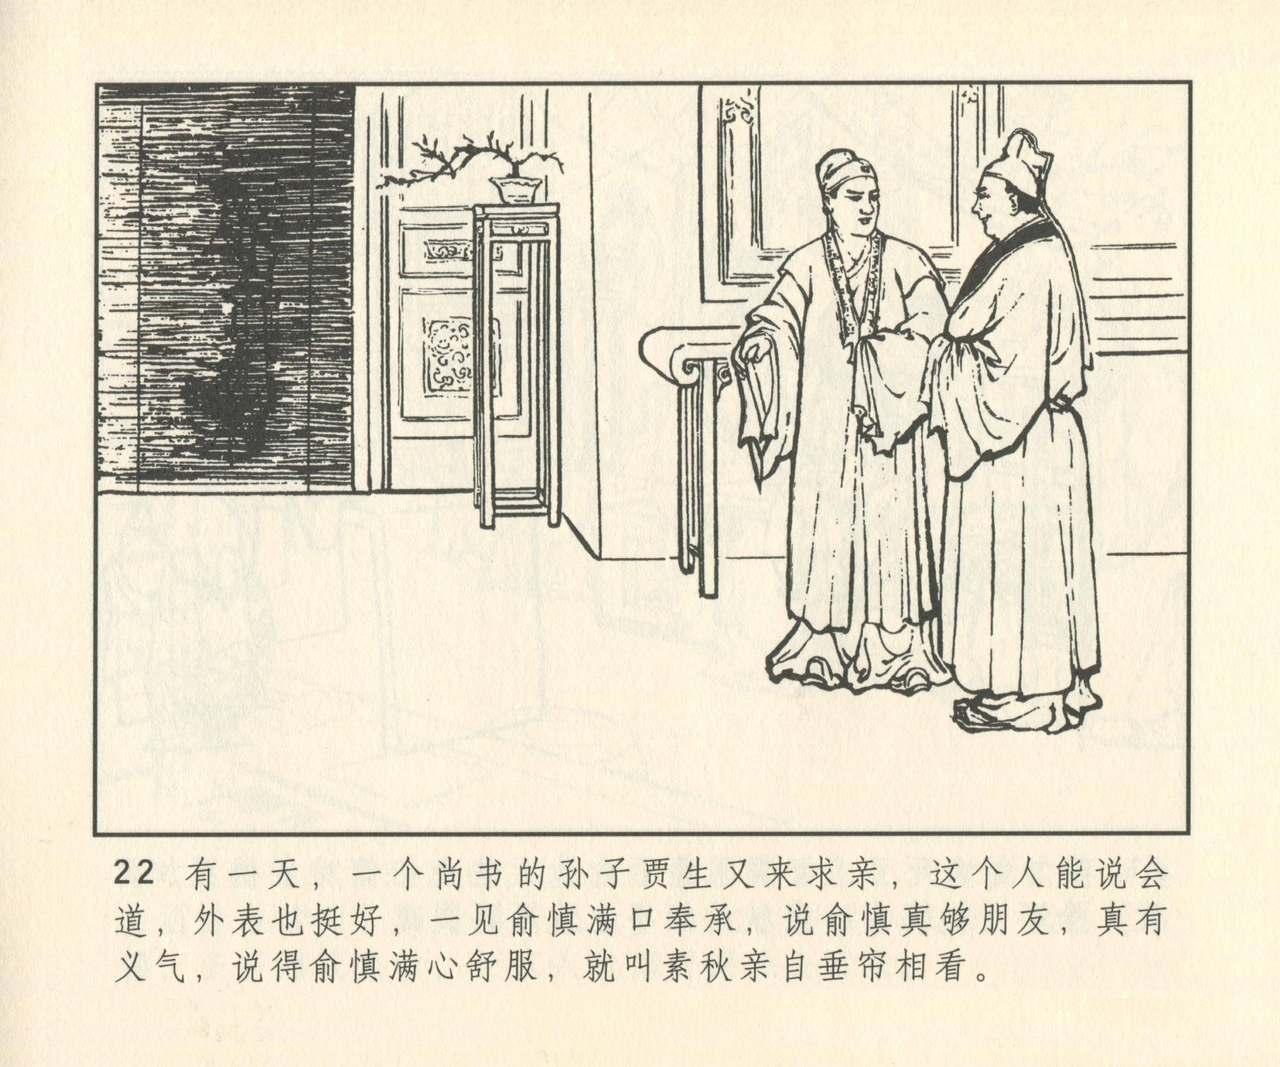 聊斋志异 张玮等绘 天津人民美术出版社 卷二十一 ~ 三十 302